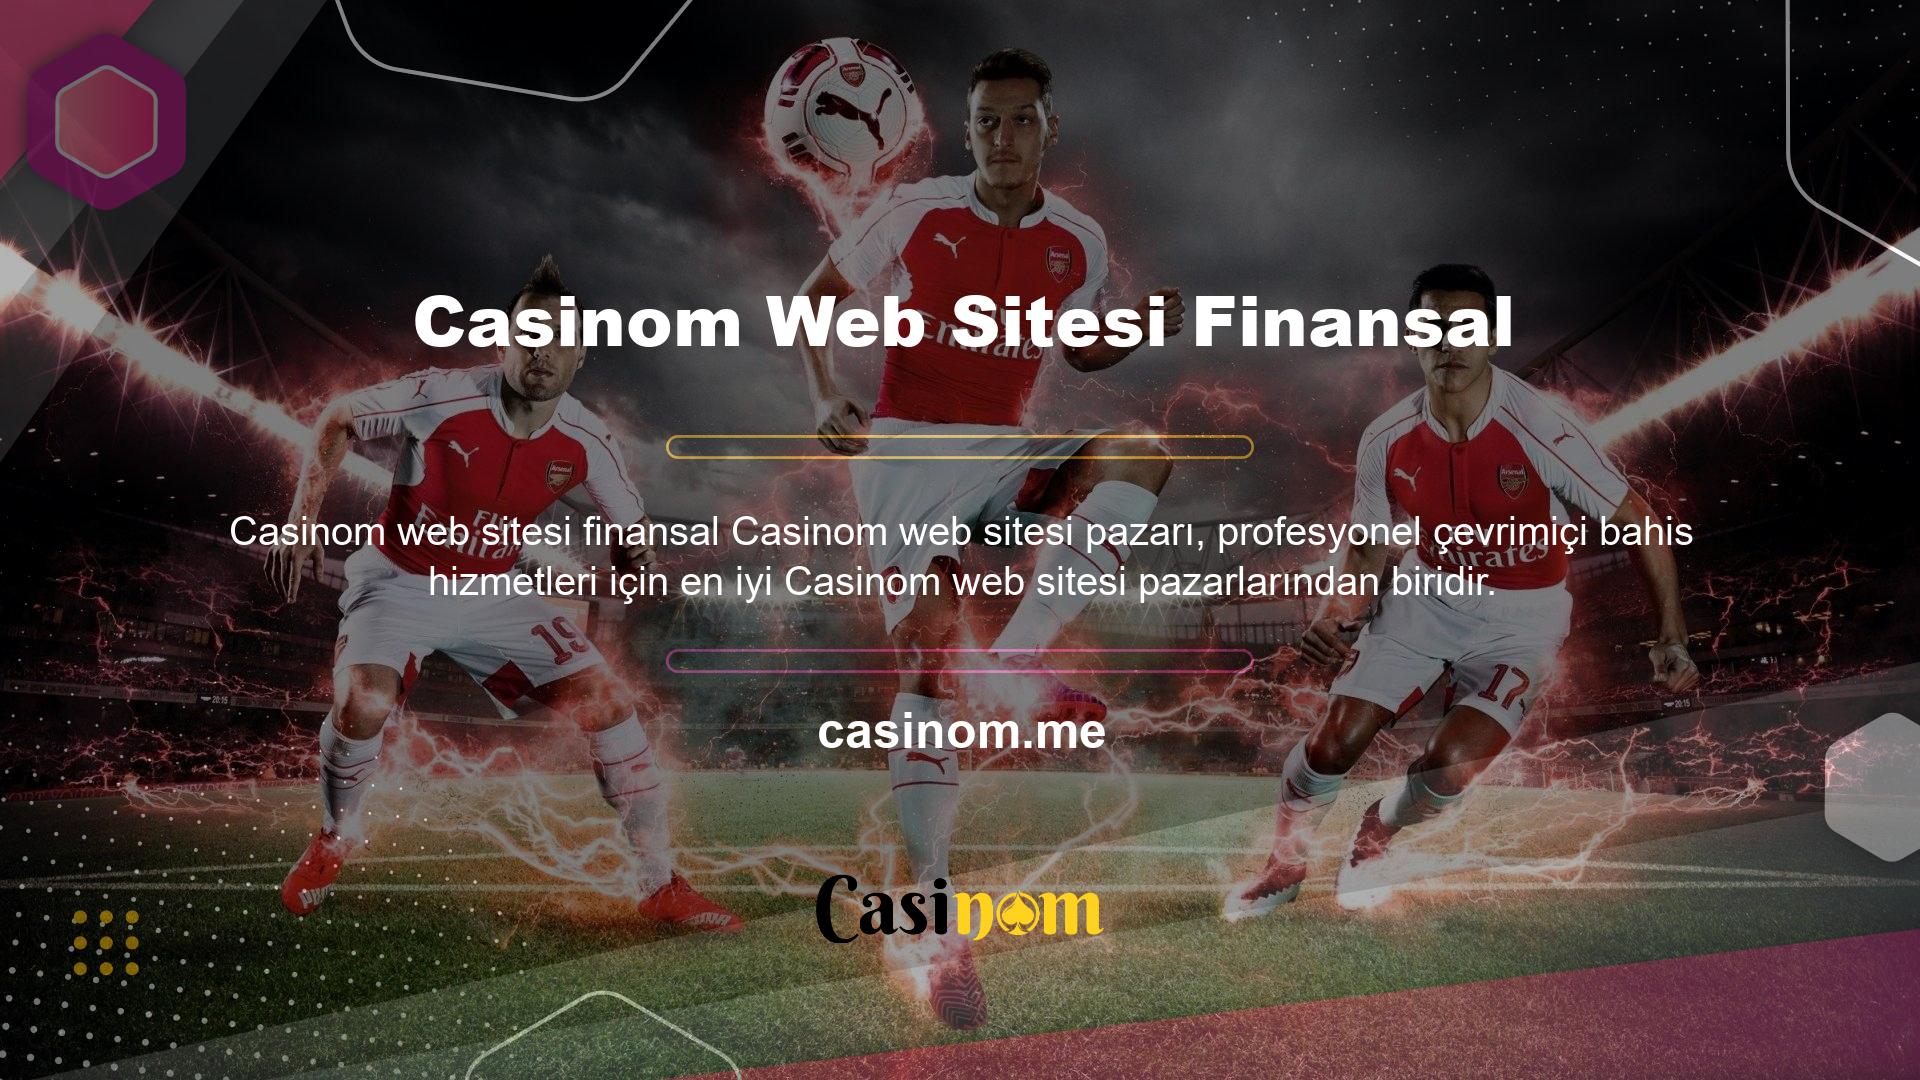 Casinom Bahis Sitesi içeriklerinden yararlanmak için siteye ücretsiz üye olmanız gerekmektedir